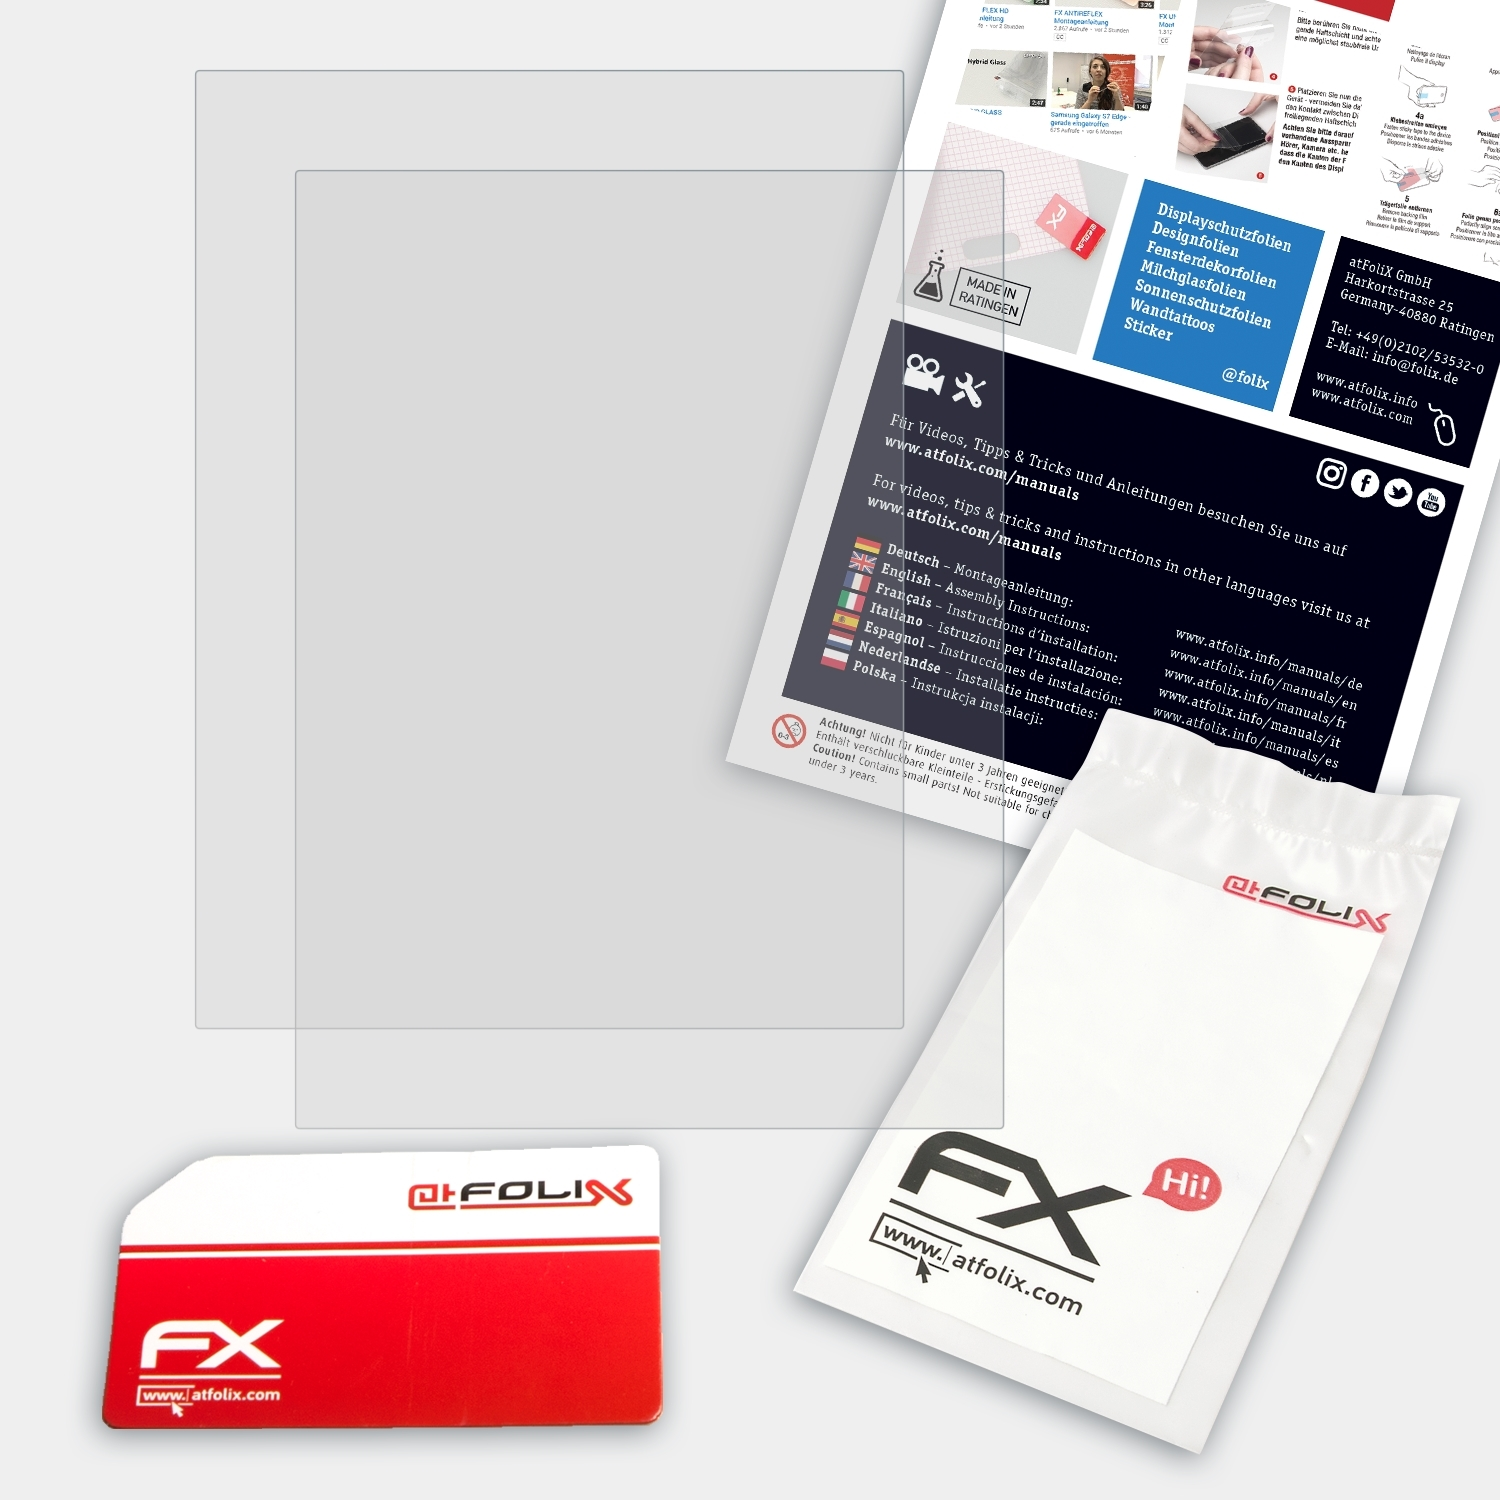 2) 2x Edition FX-Antireflex ATFOLIX Kobo Aura Displayschutz(für